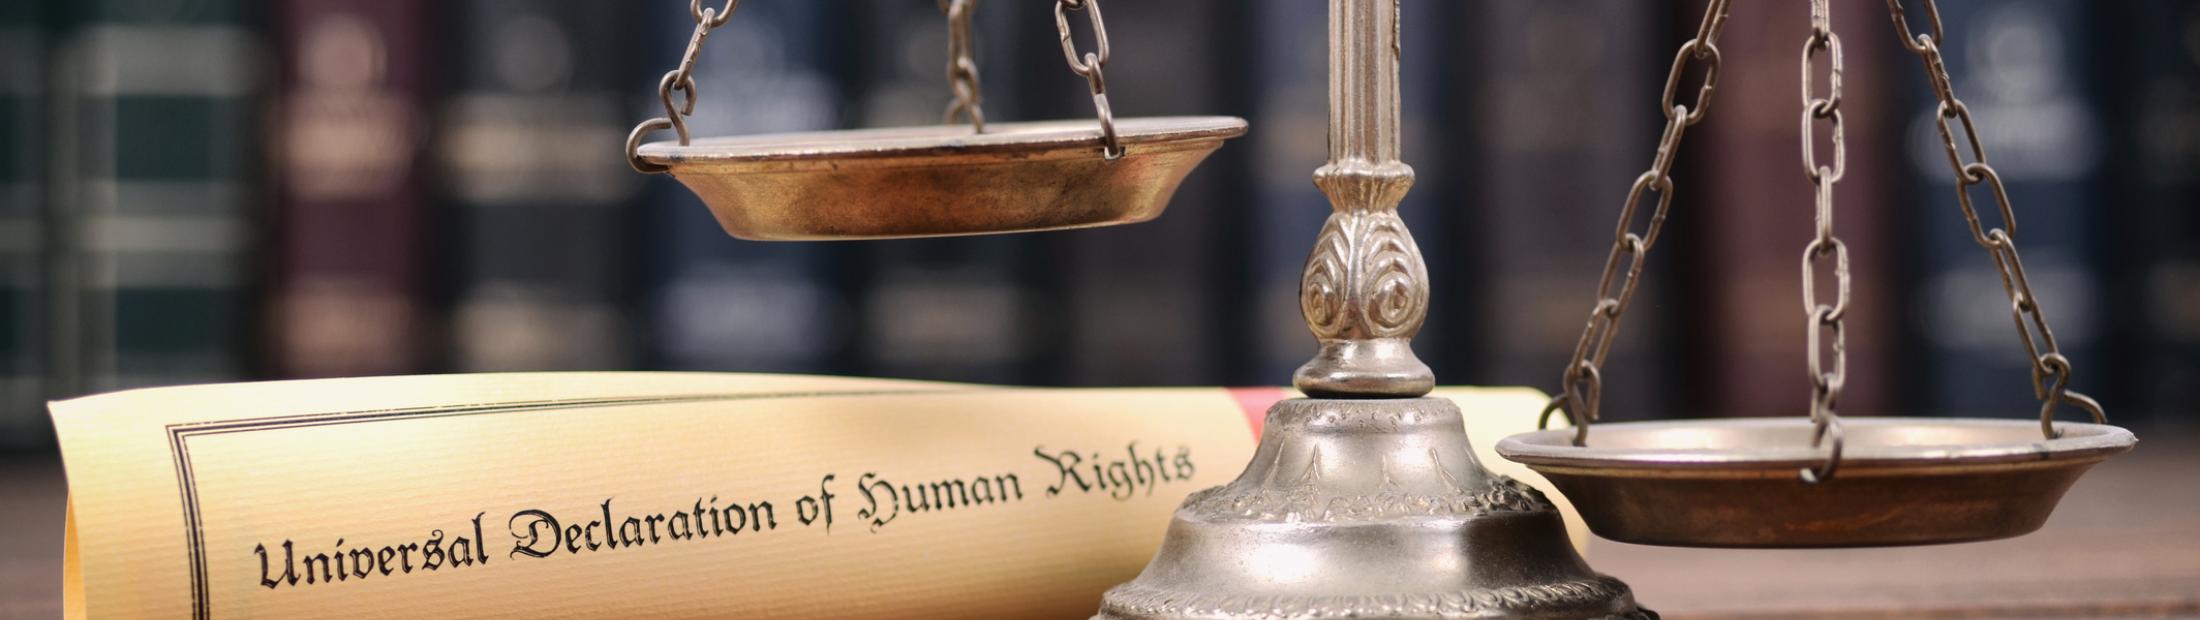 ¿Sabes por qué se celebra el Día Internacional de los Derechos Humanos?